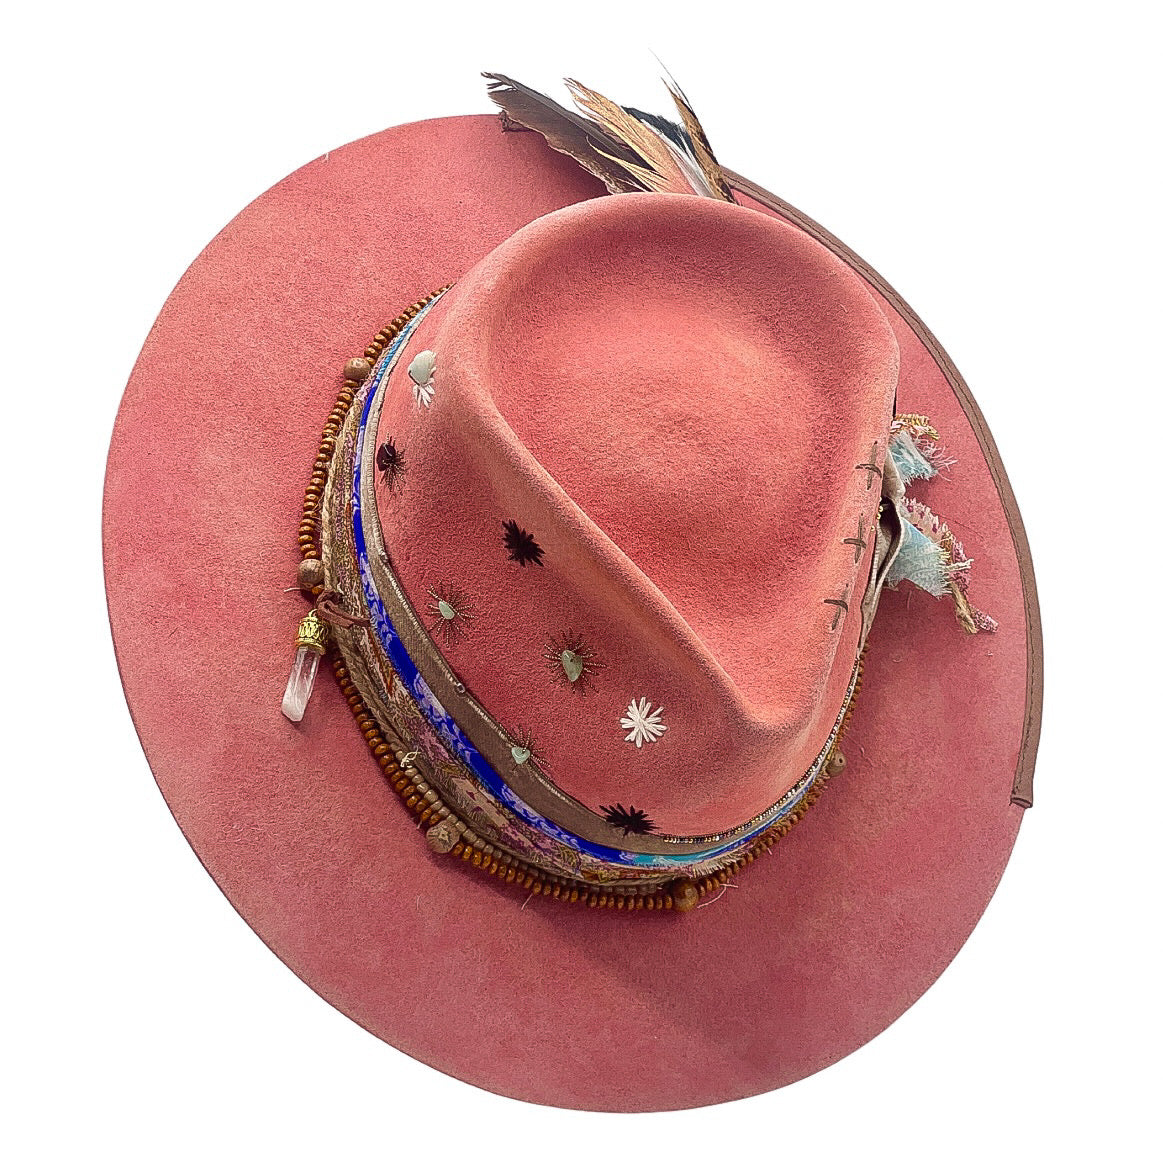 Pink hats – Pokijomba Hats